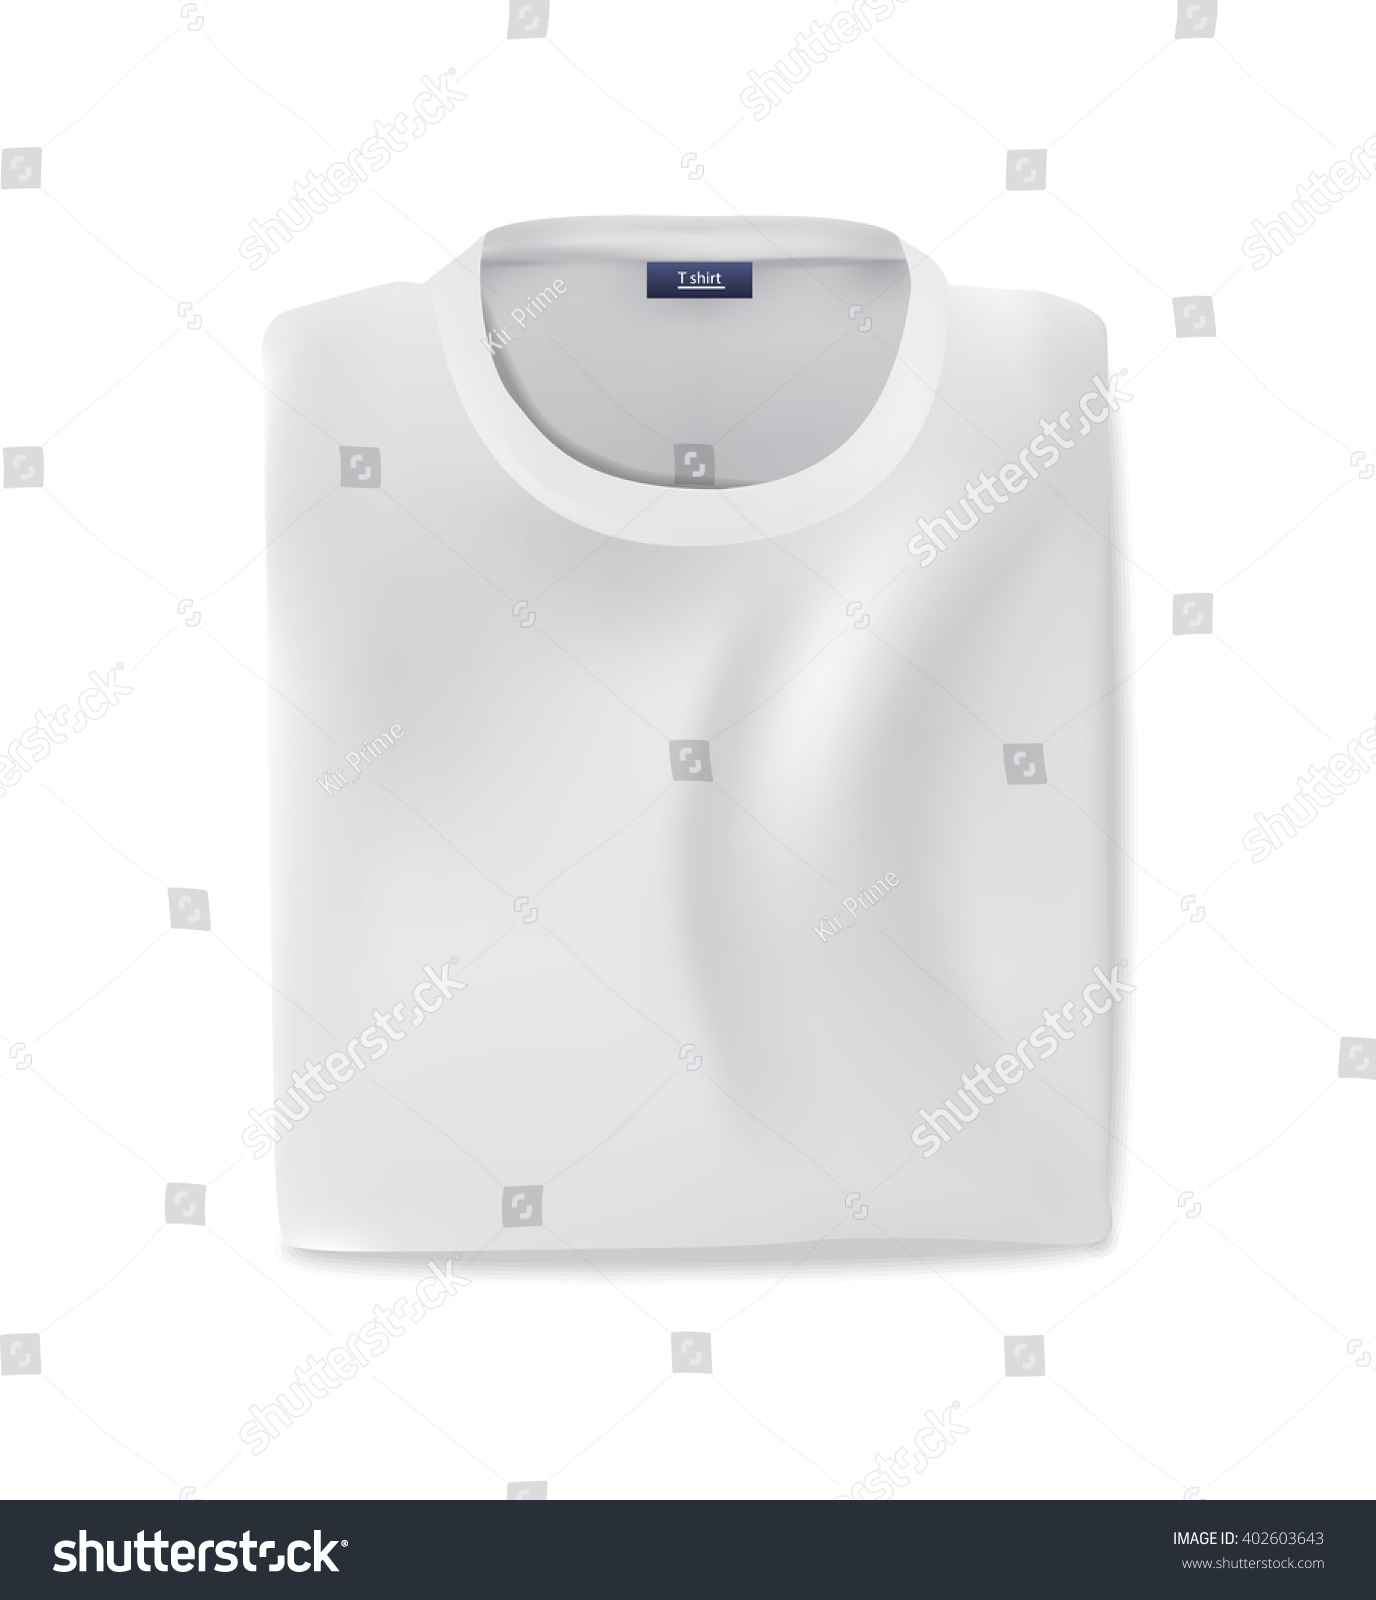 Download Folded White T-Shirt Mockup, Vector Eps10 Illustration - 402603643 : Shutterstock